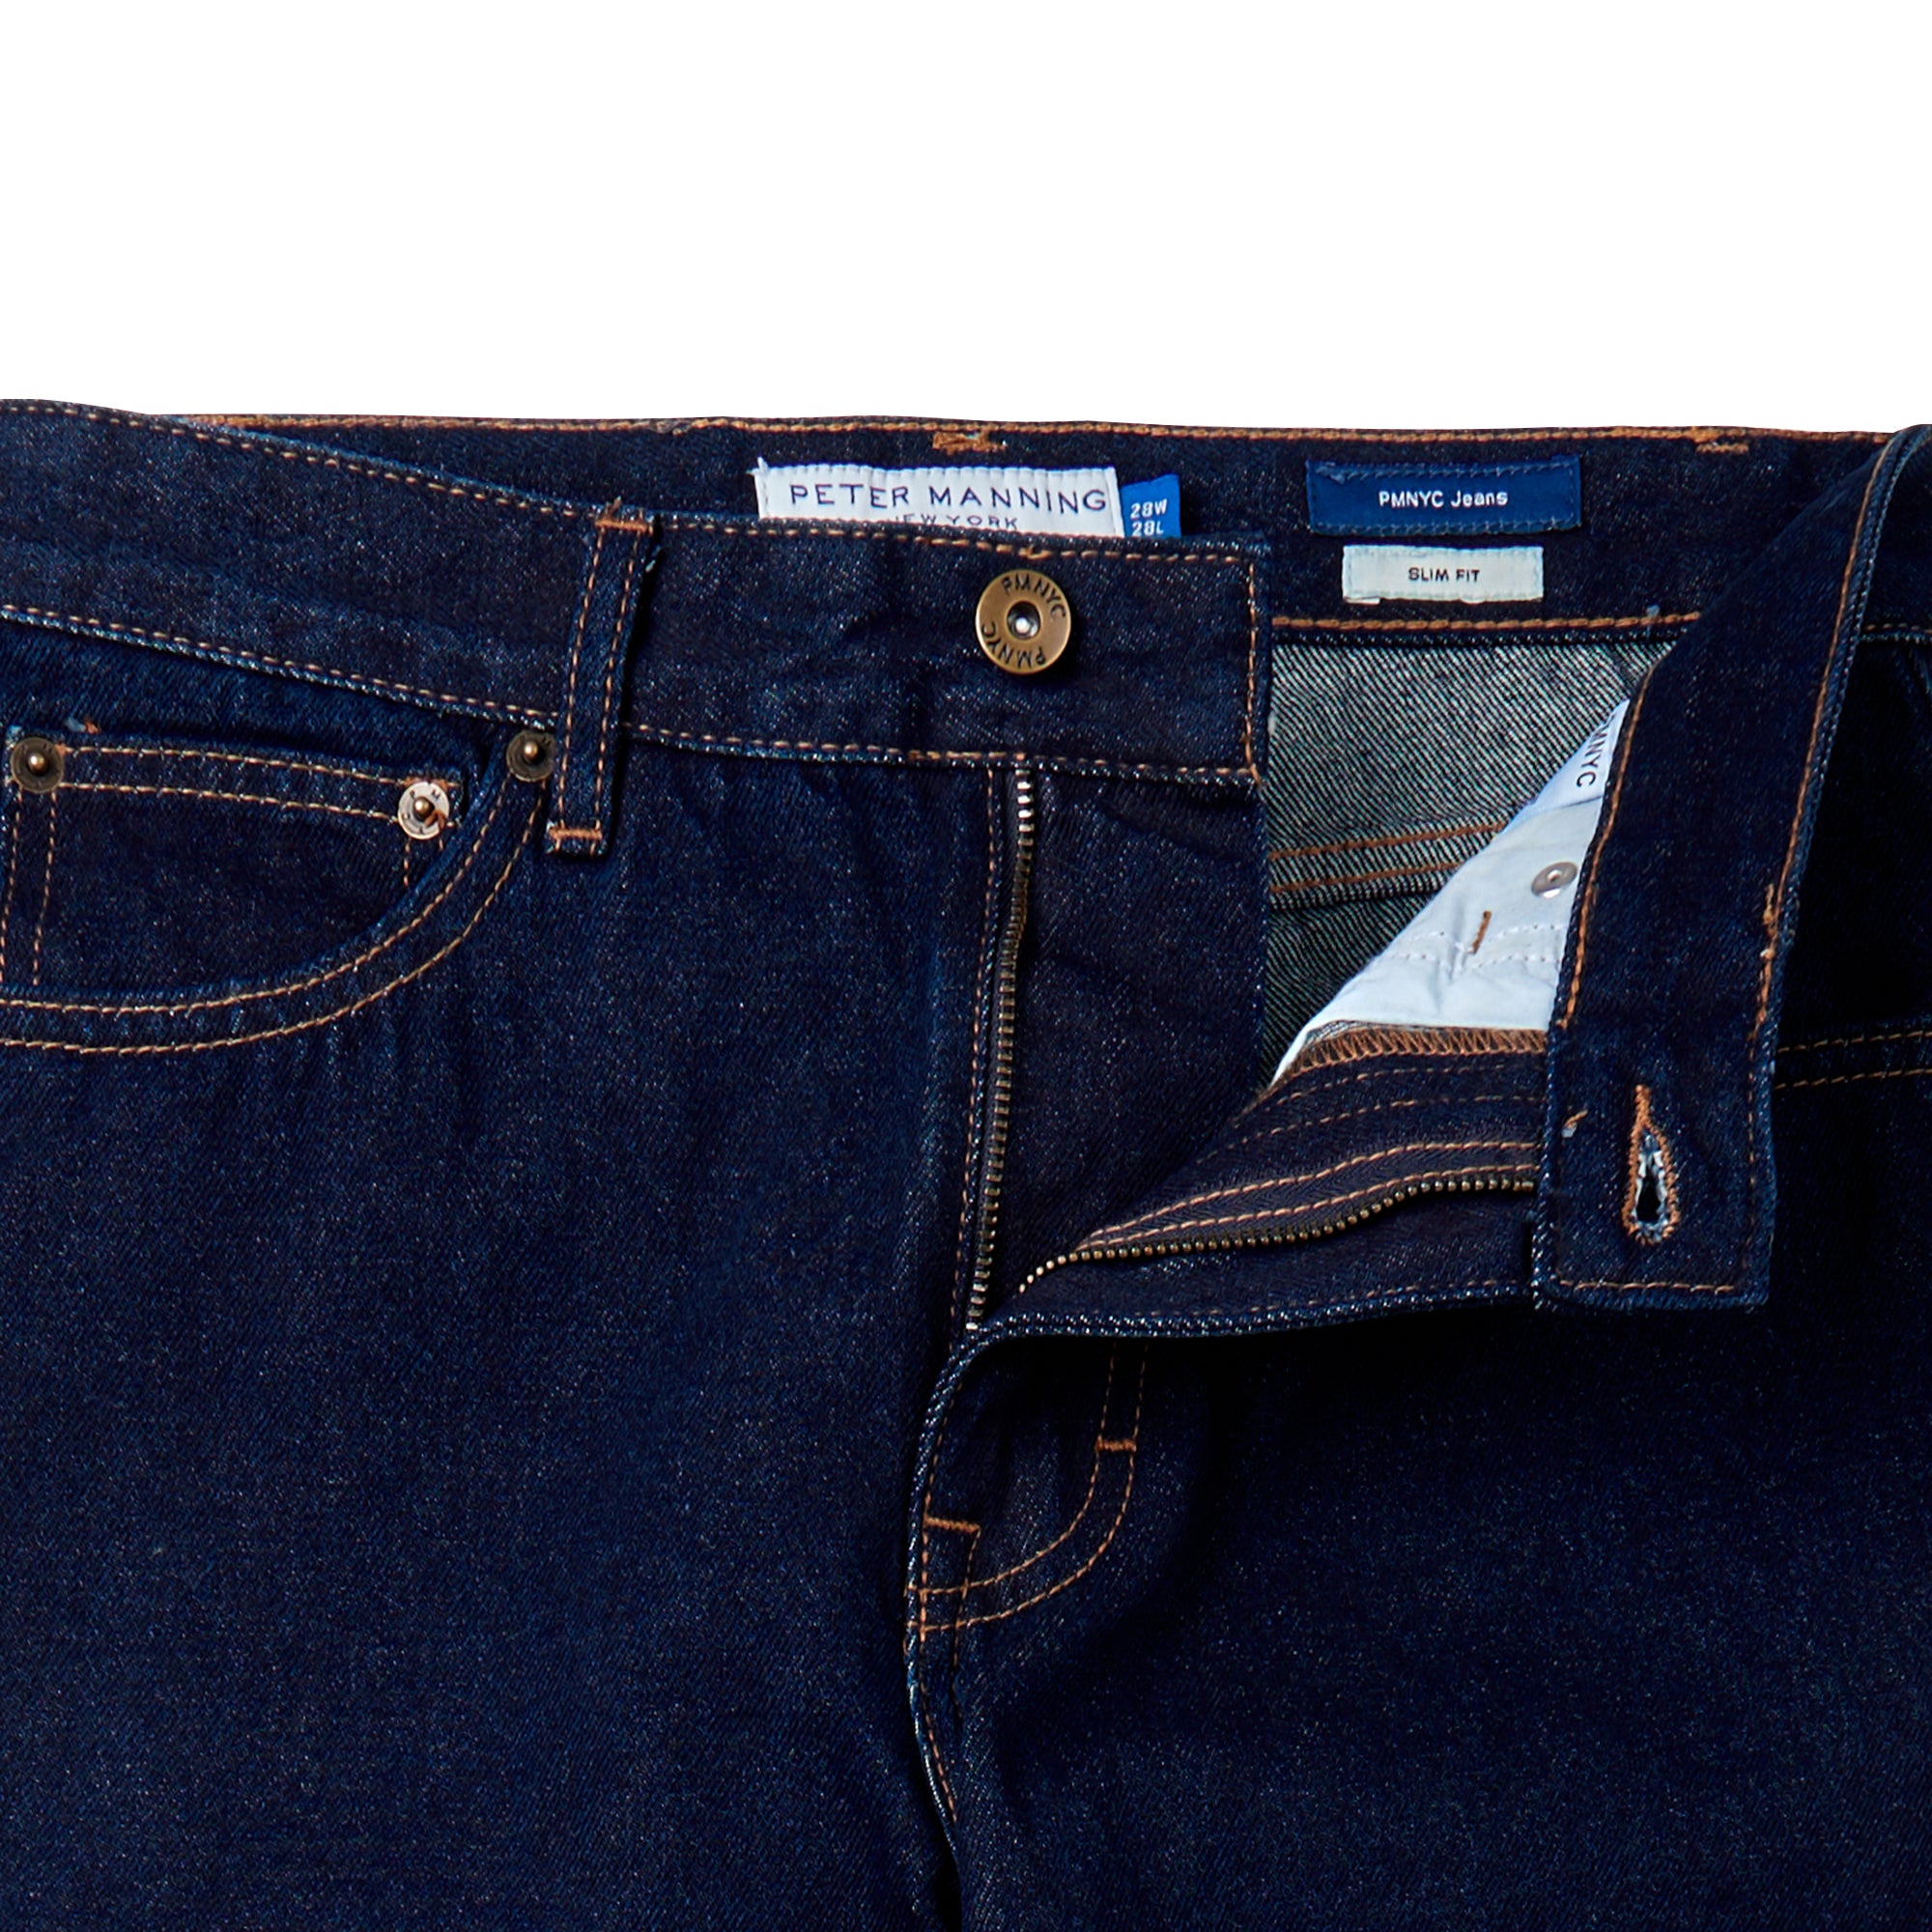 PMNYC Jeans Slim Fit, Dark Indigo Wash | Peter Manning NYC